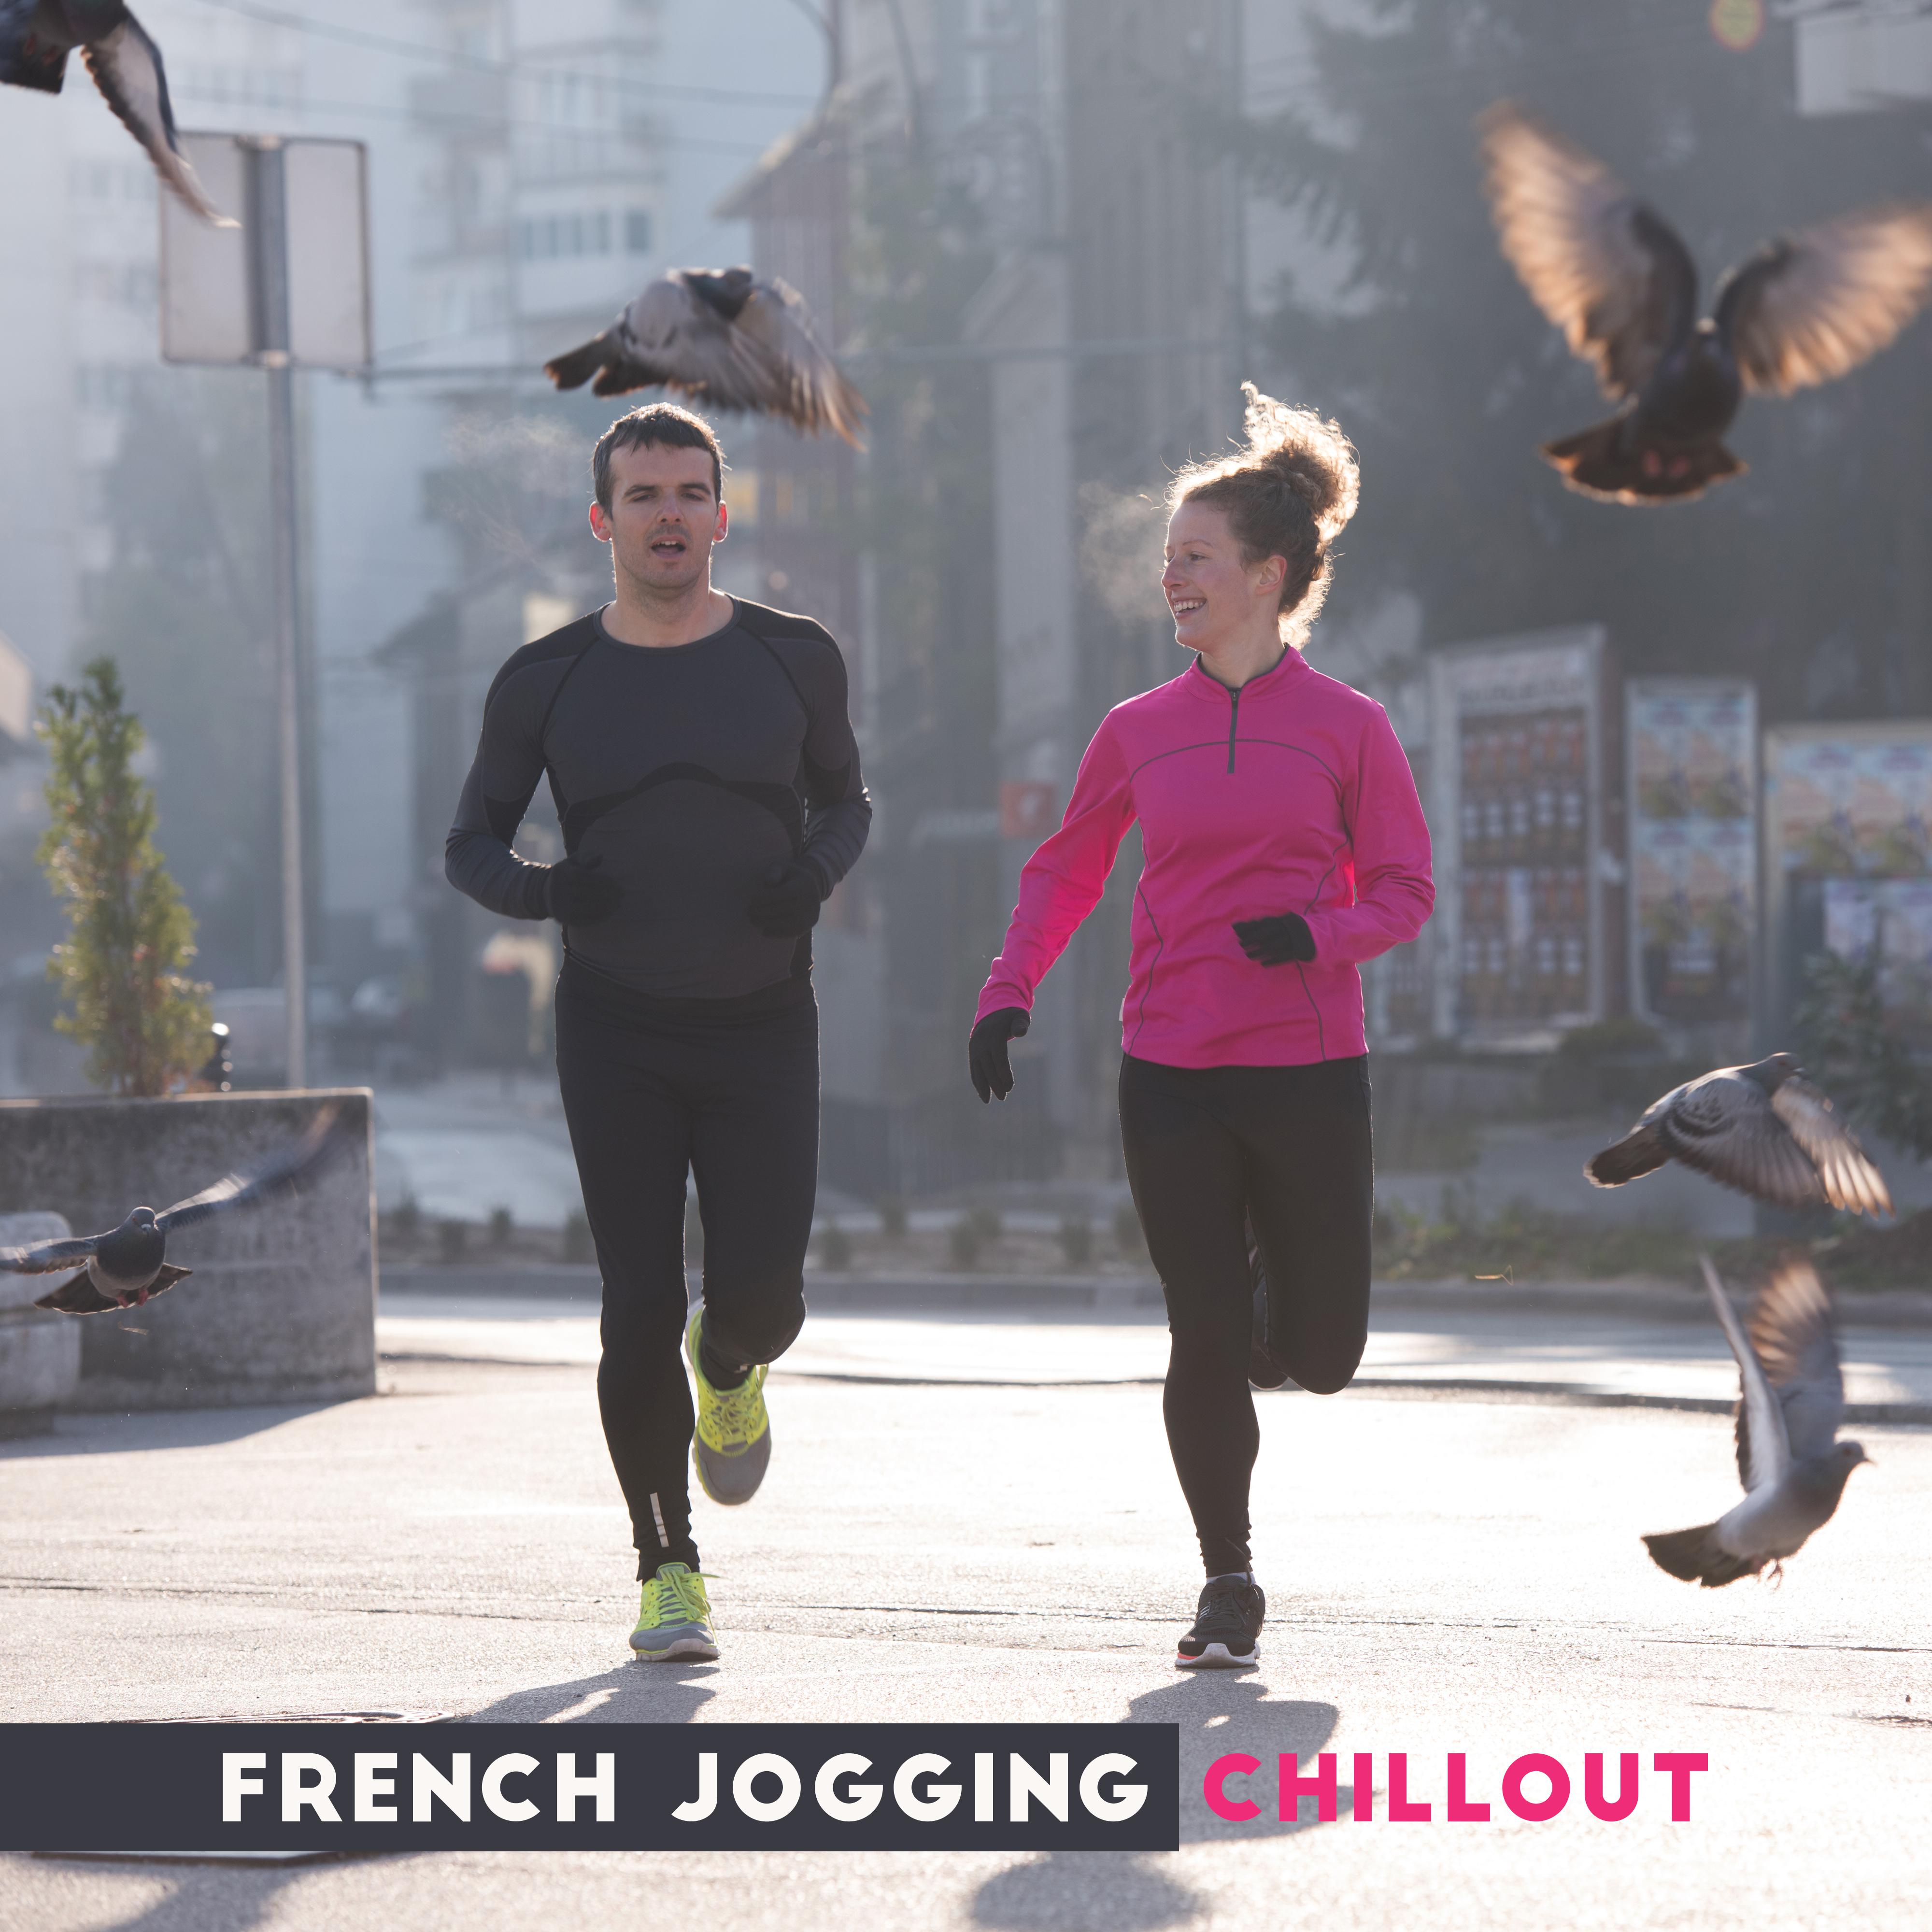 French Jogging Chillout: La Combustion des Graisses, Nouveau Corps en Forme